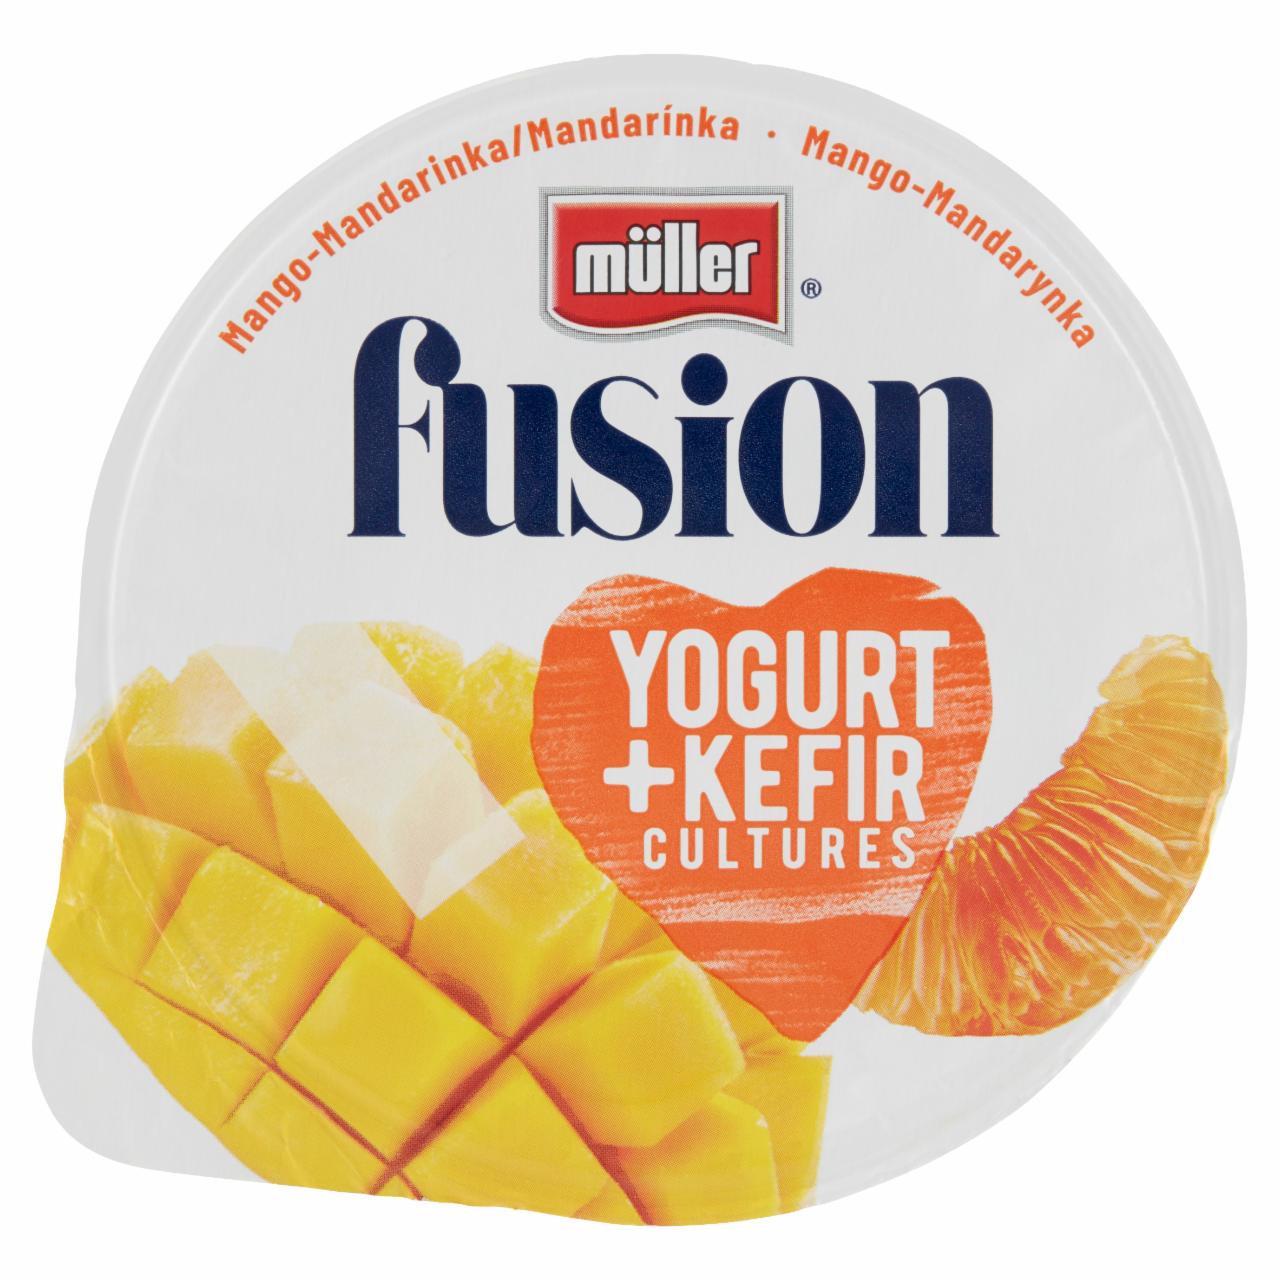 Zdjęcia - Müller Fusion Produkt mleczny fermentowany mango-mandarynka 130 g